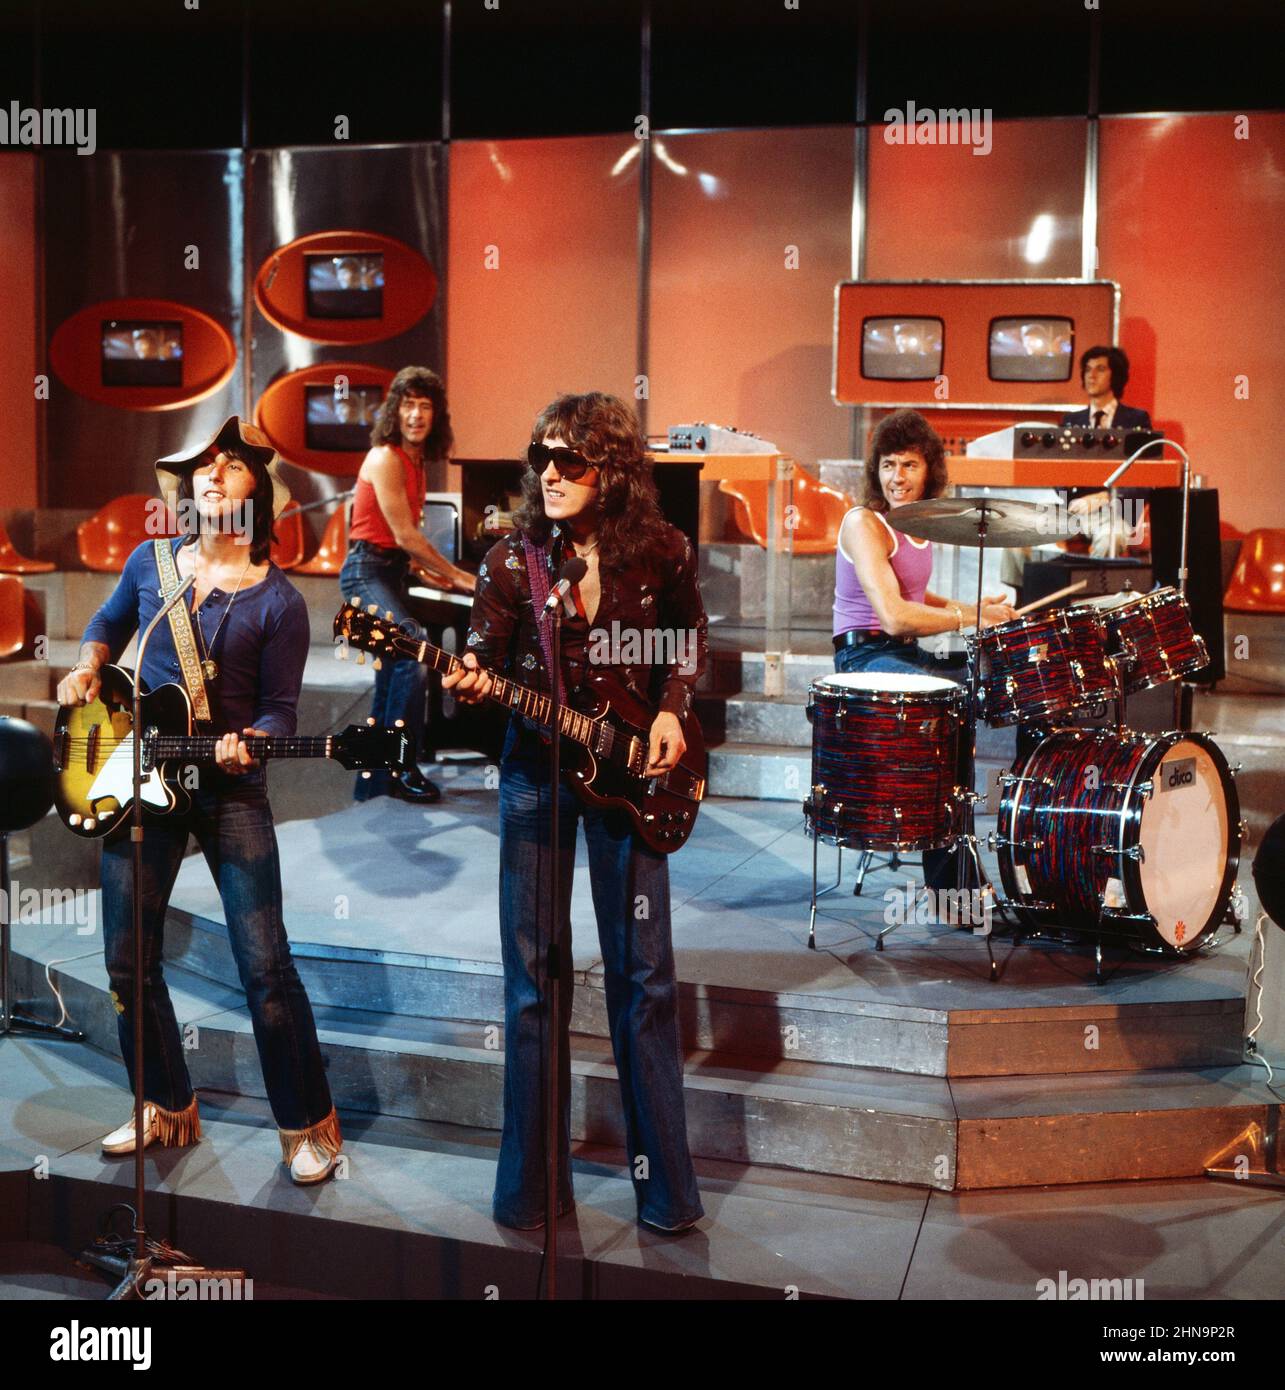 Disco, ZDF Musiksendung, The Tremeloes, britische Pop Band, Auftritt in 1974, Disco, ZDF music programme, The Tremeloes, British Pop band, performance, 1974. Stock Photo